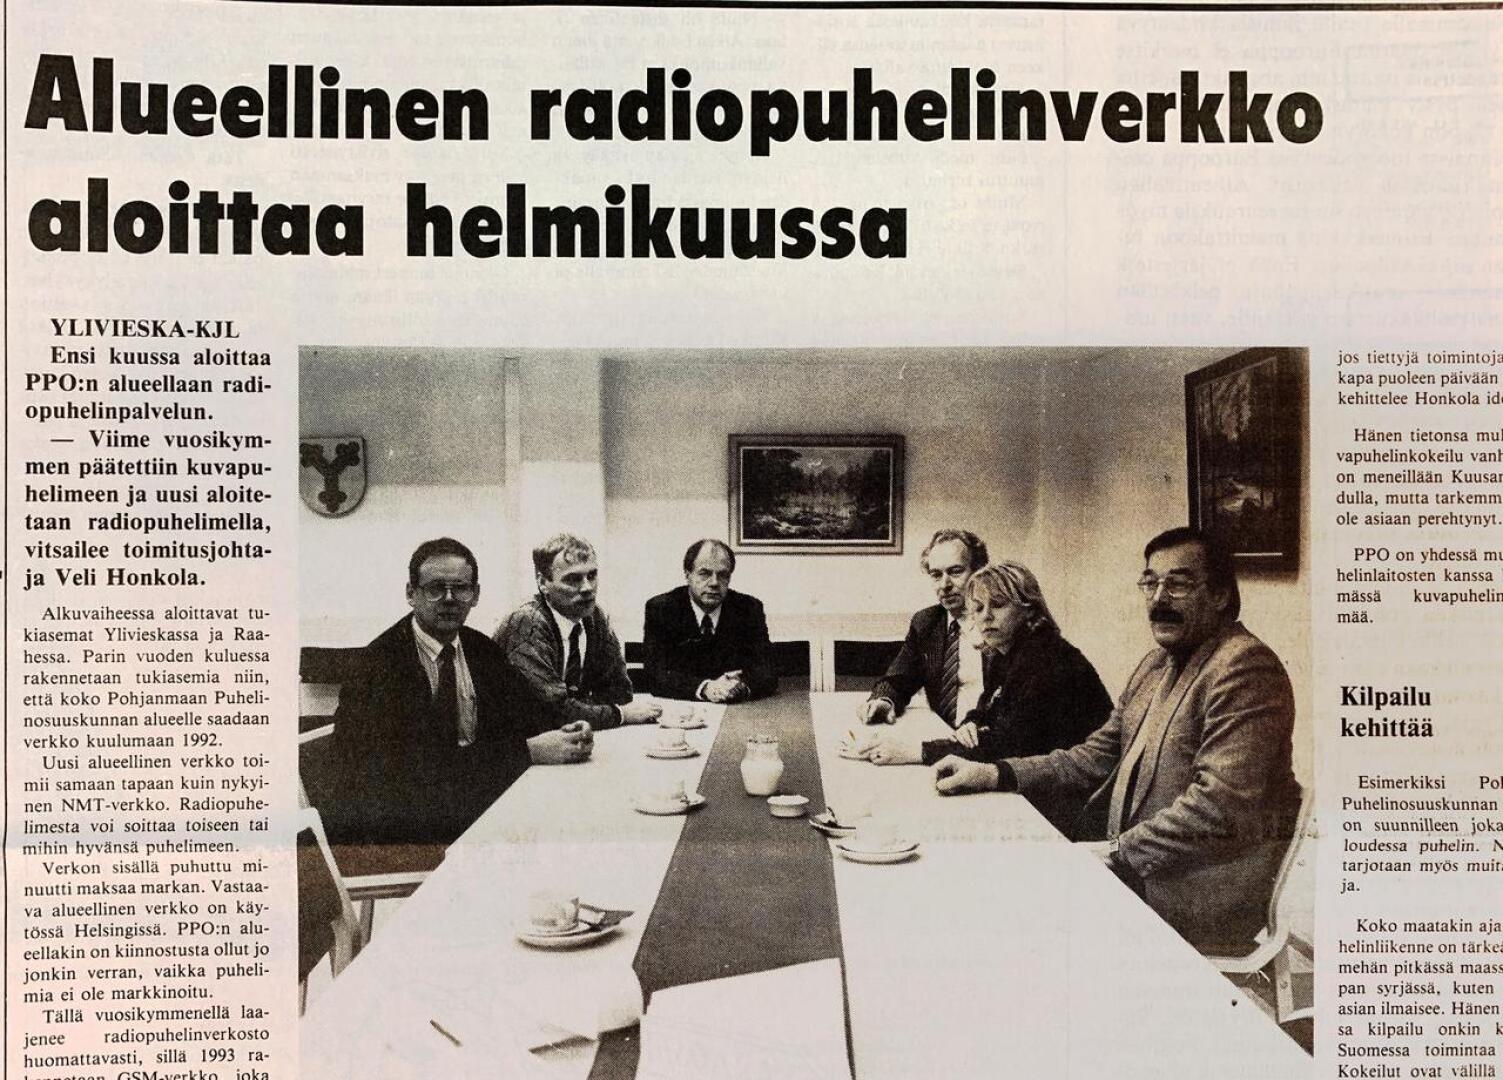 Pohjanmaan puhelinosuuskunnan johtoryhmä oli 30 vuotta sitten Kalajokilaakson aamukahvivieraana.